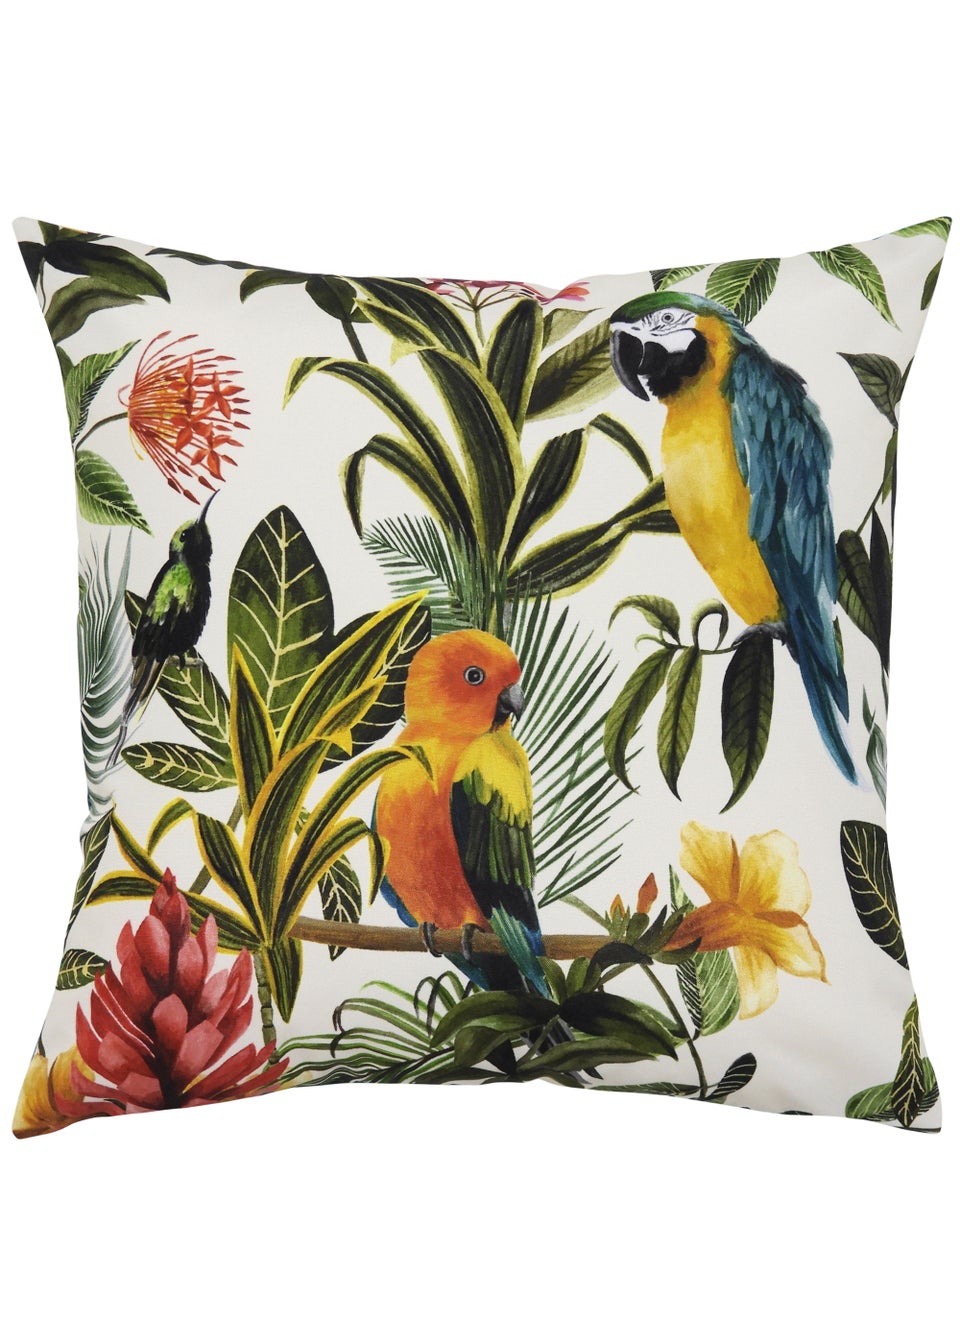 Evans Lichfield Parrots Outdoor Filled Cushion (43cm x 43cm x 8cm)